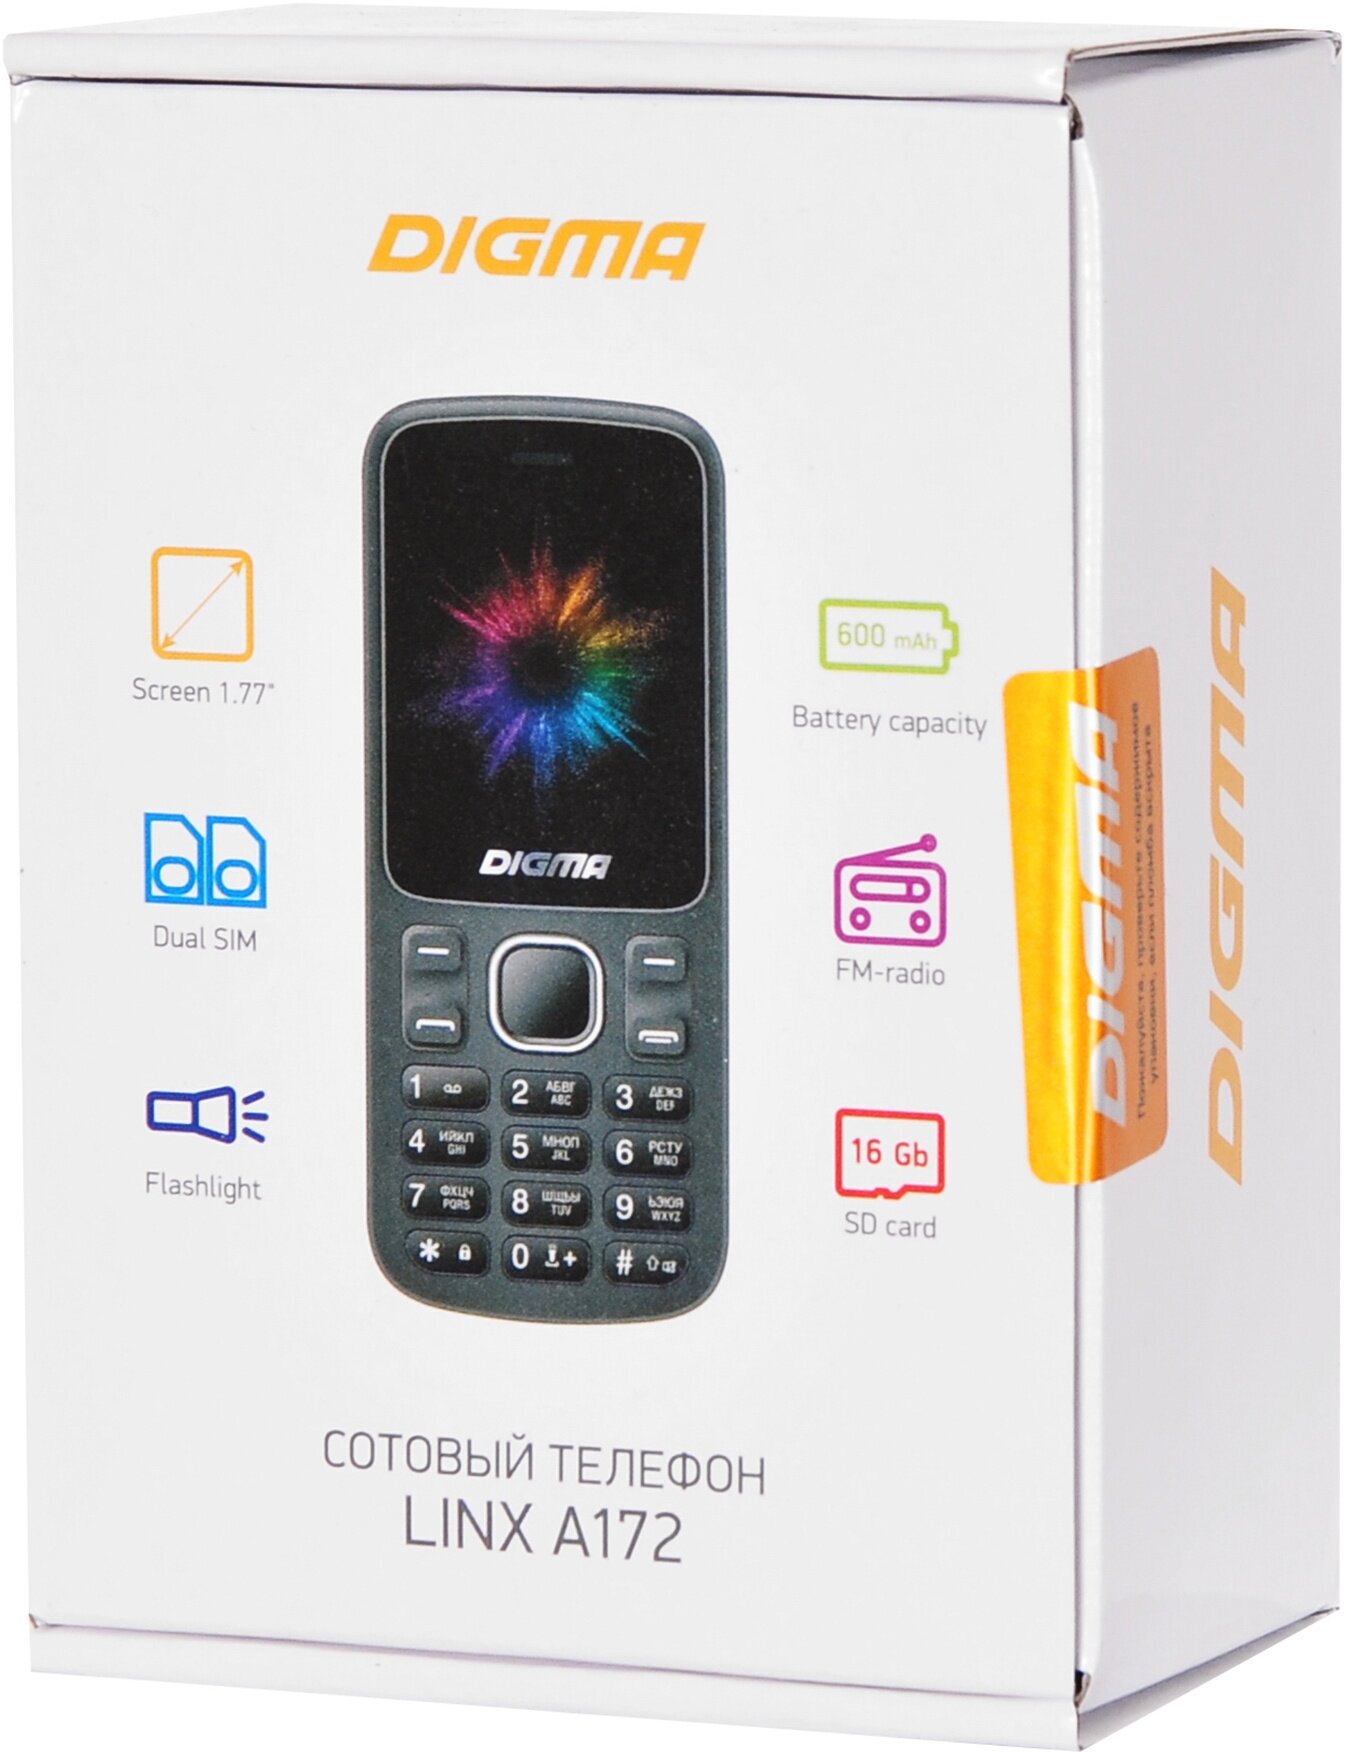 Мобильный телефон Digma A172 Linx 32Mb черный моноблок 2Sim 1.77" 128x160 GSM900/1800 microSD max32G